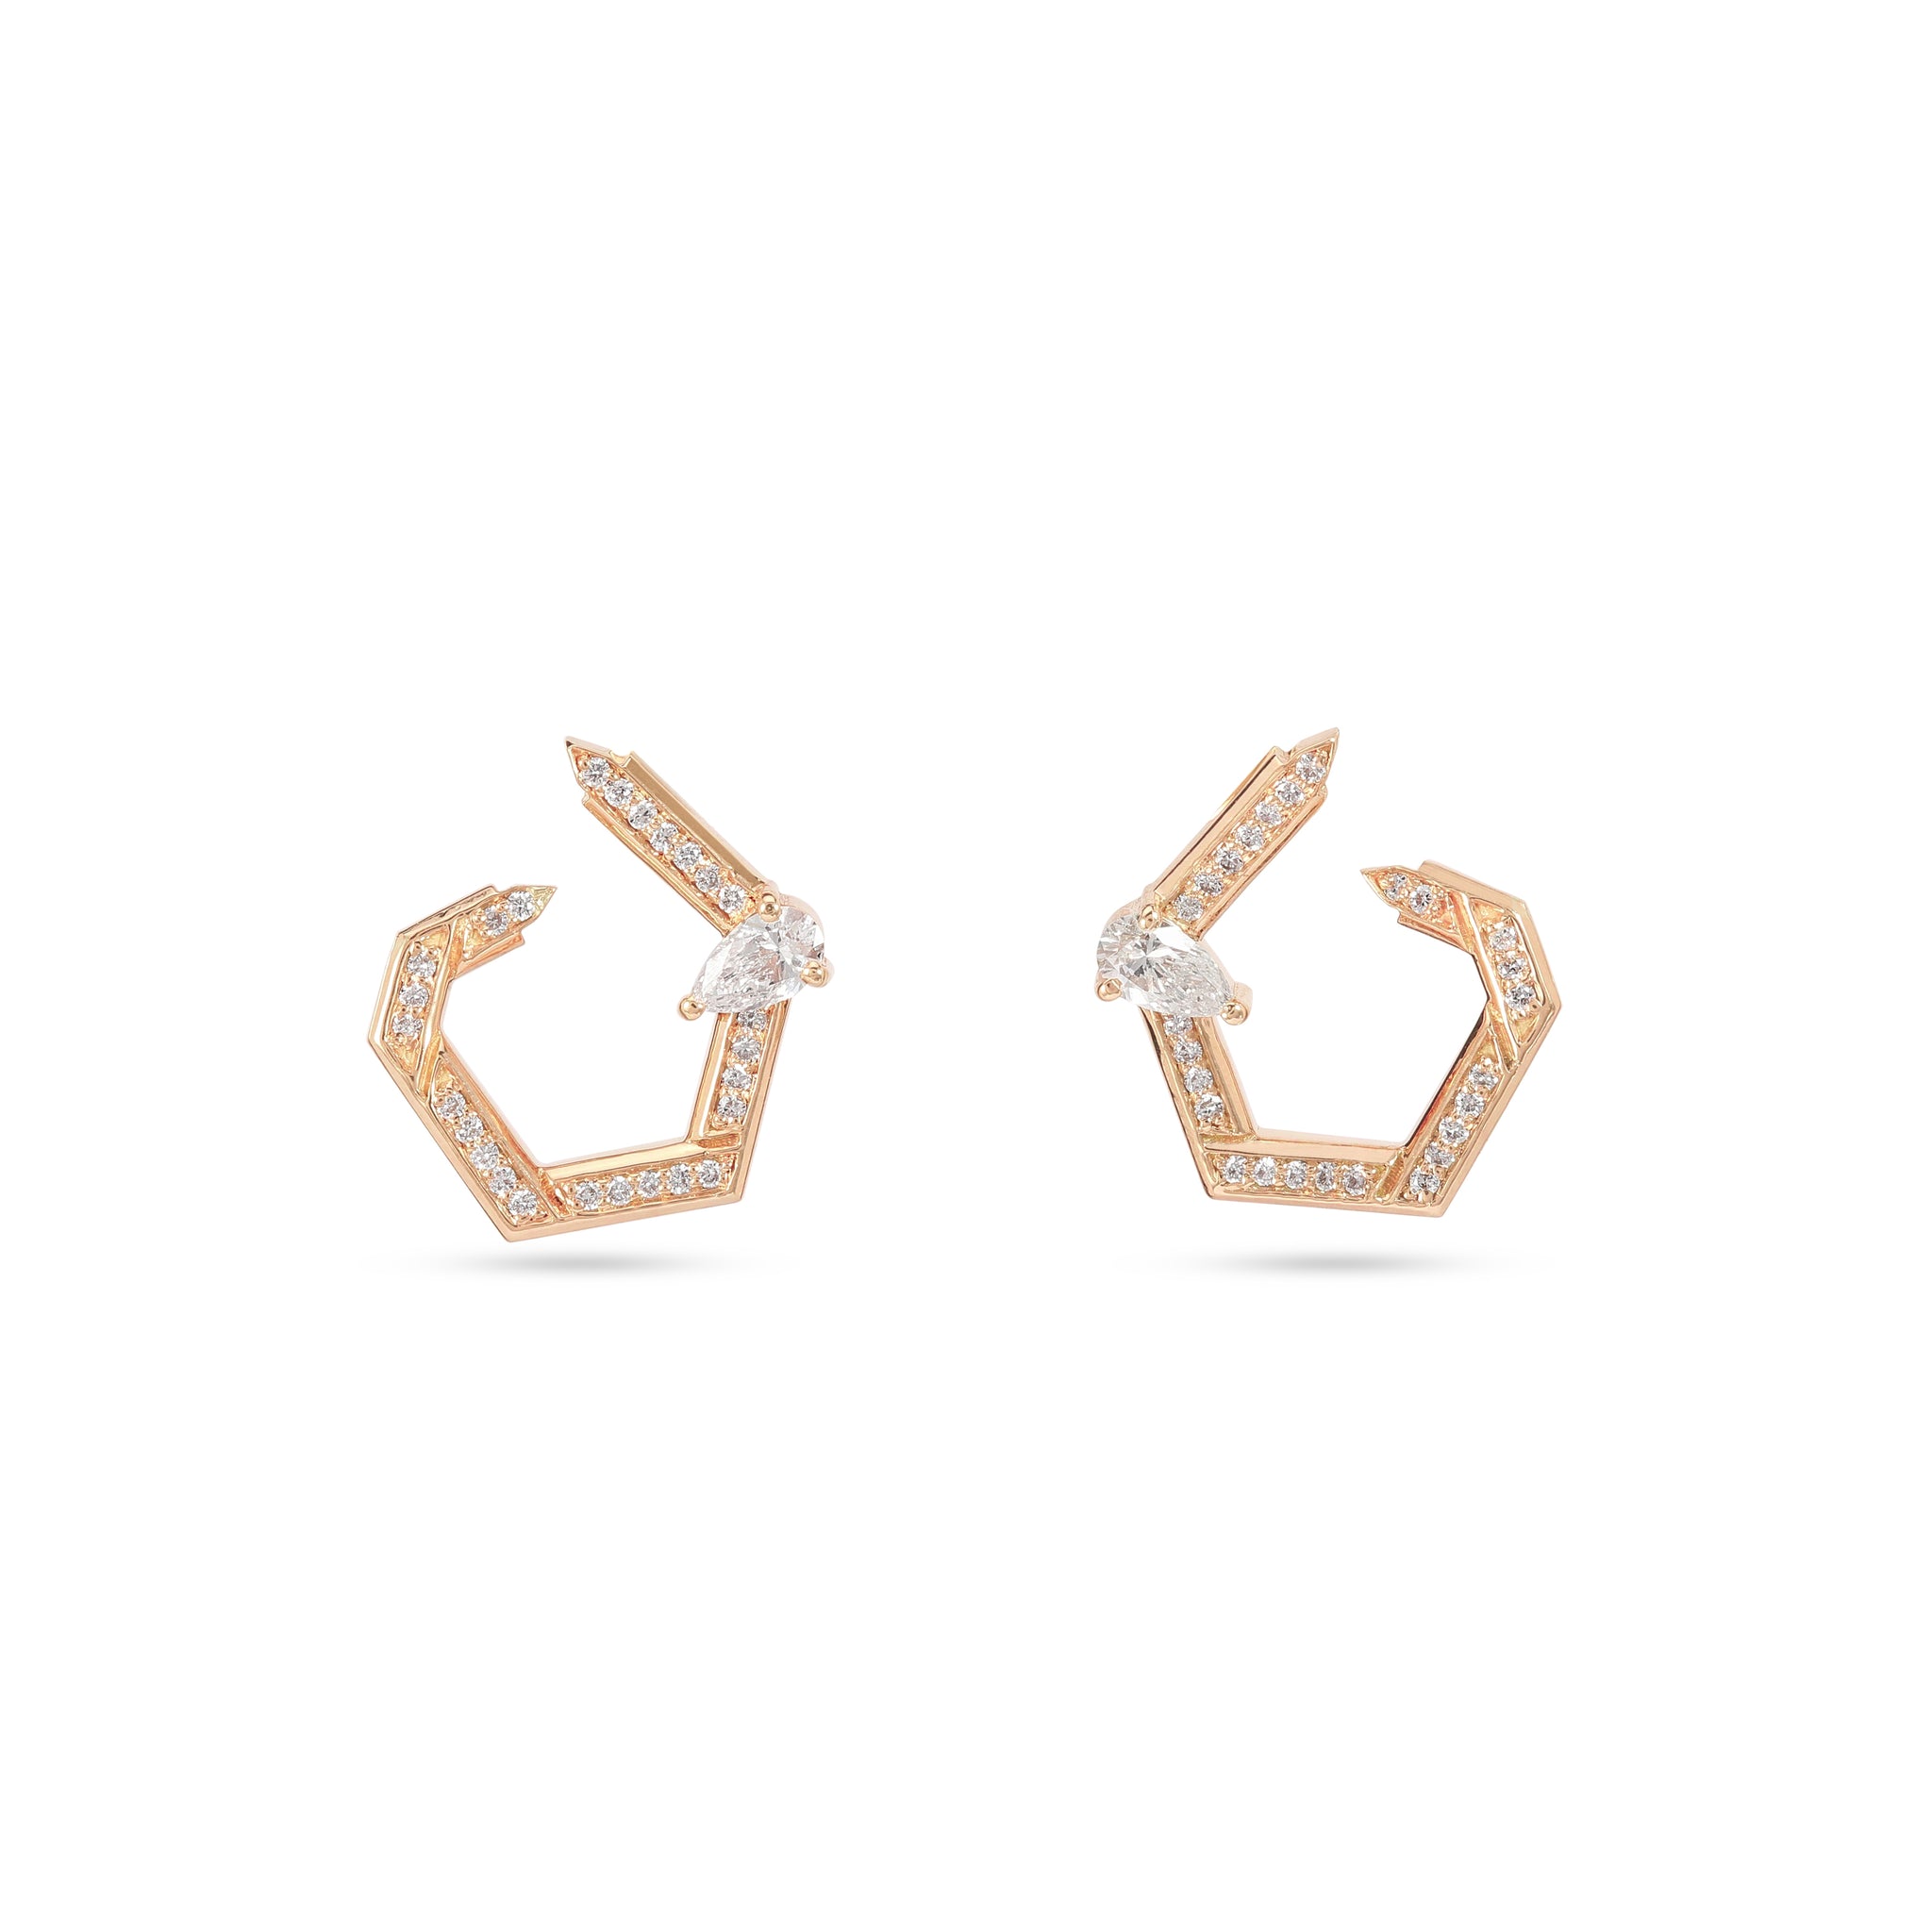 Hexad Diamond Earrings in Rose Gold